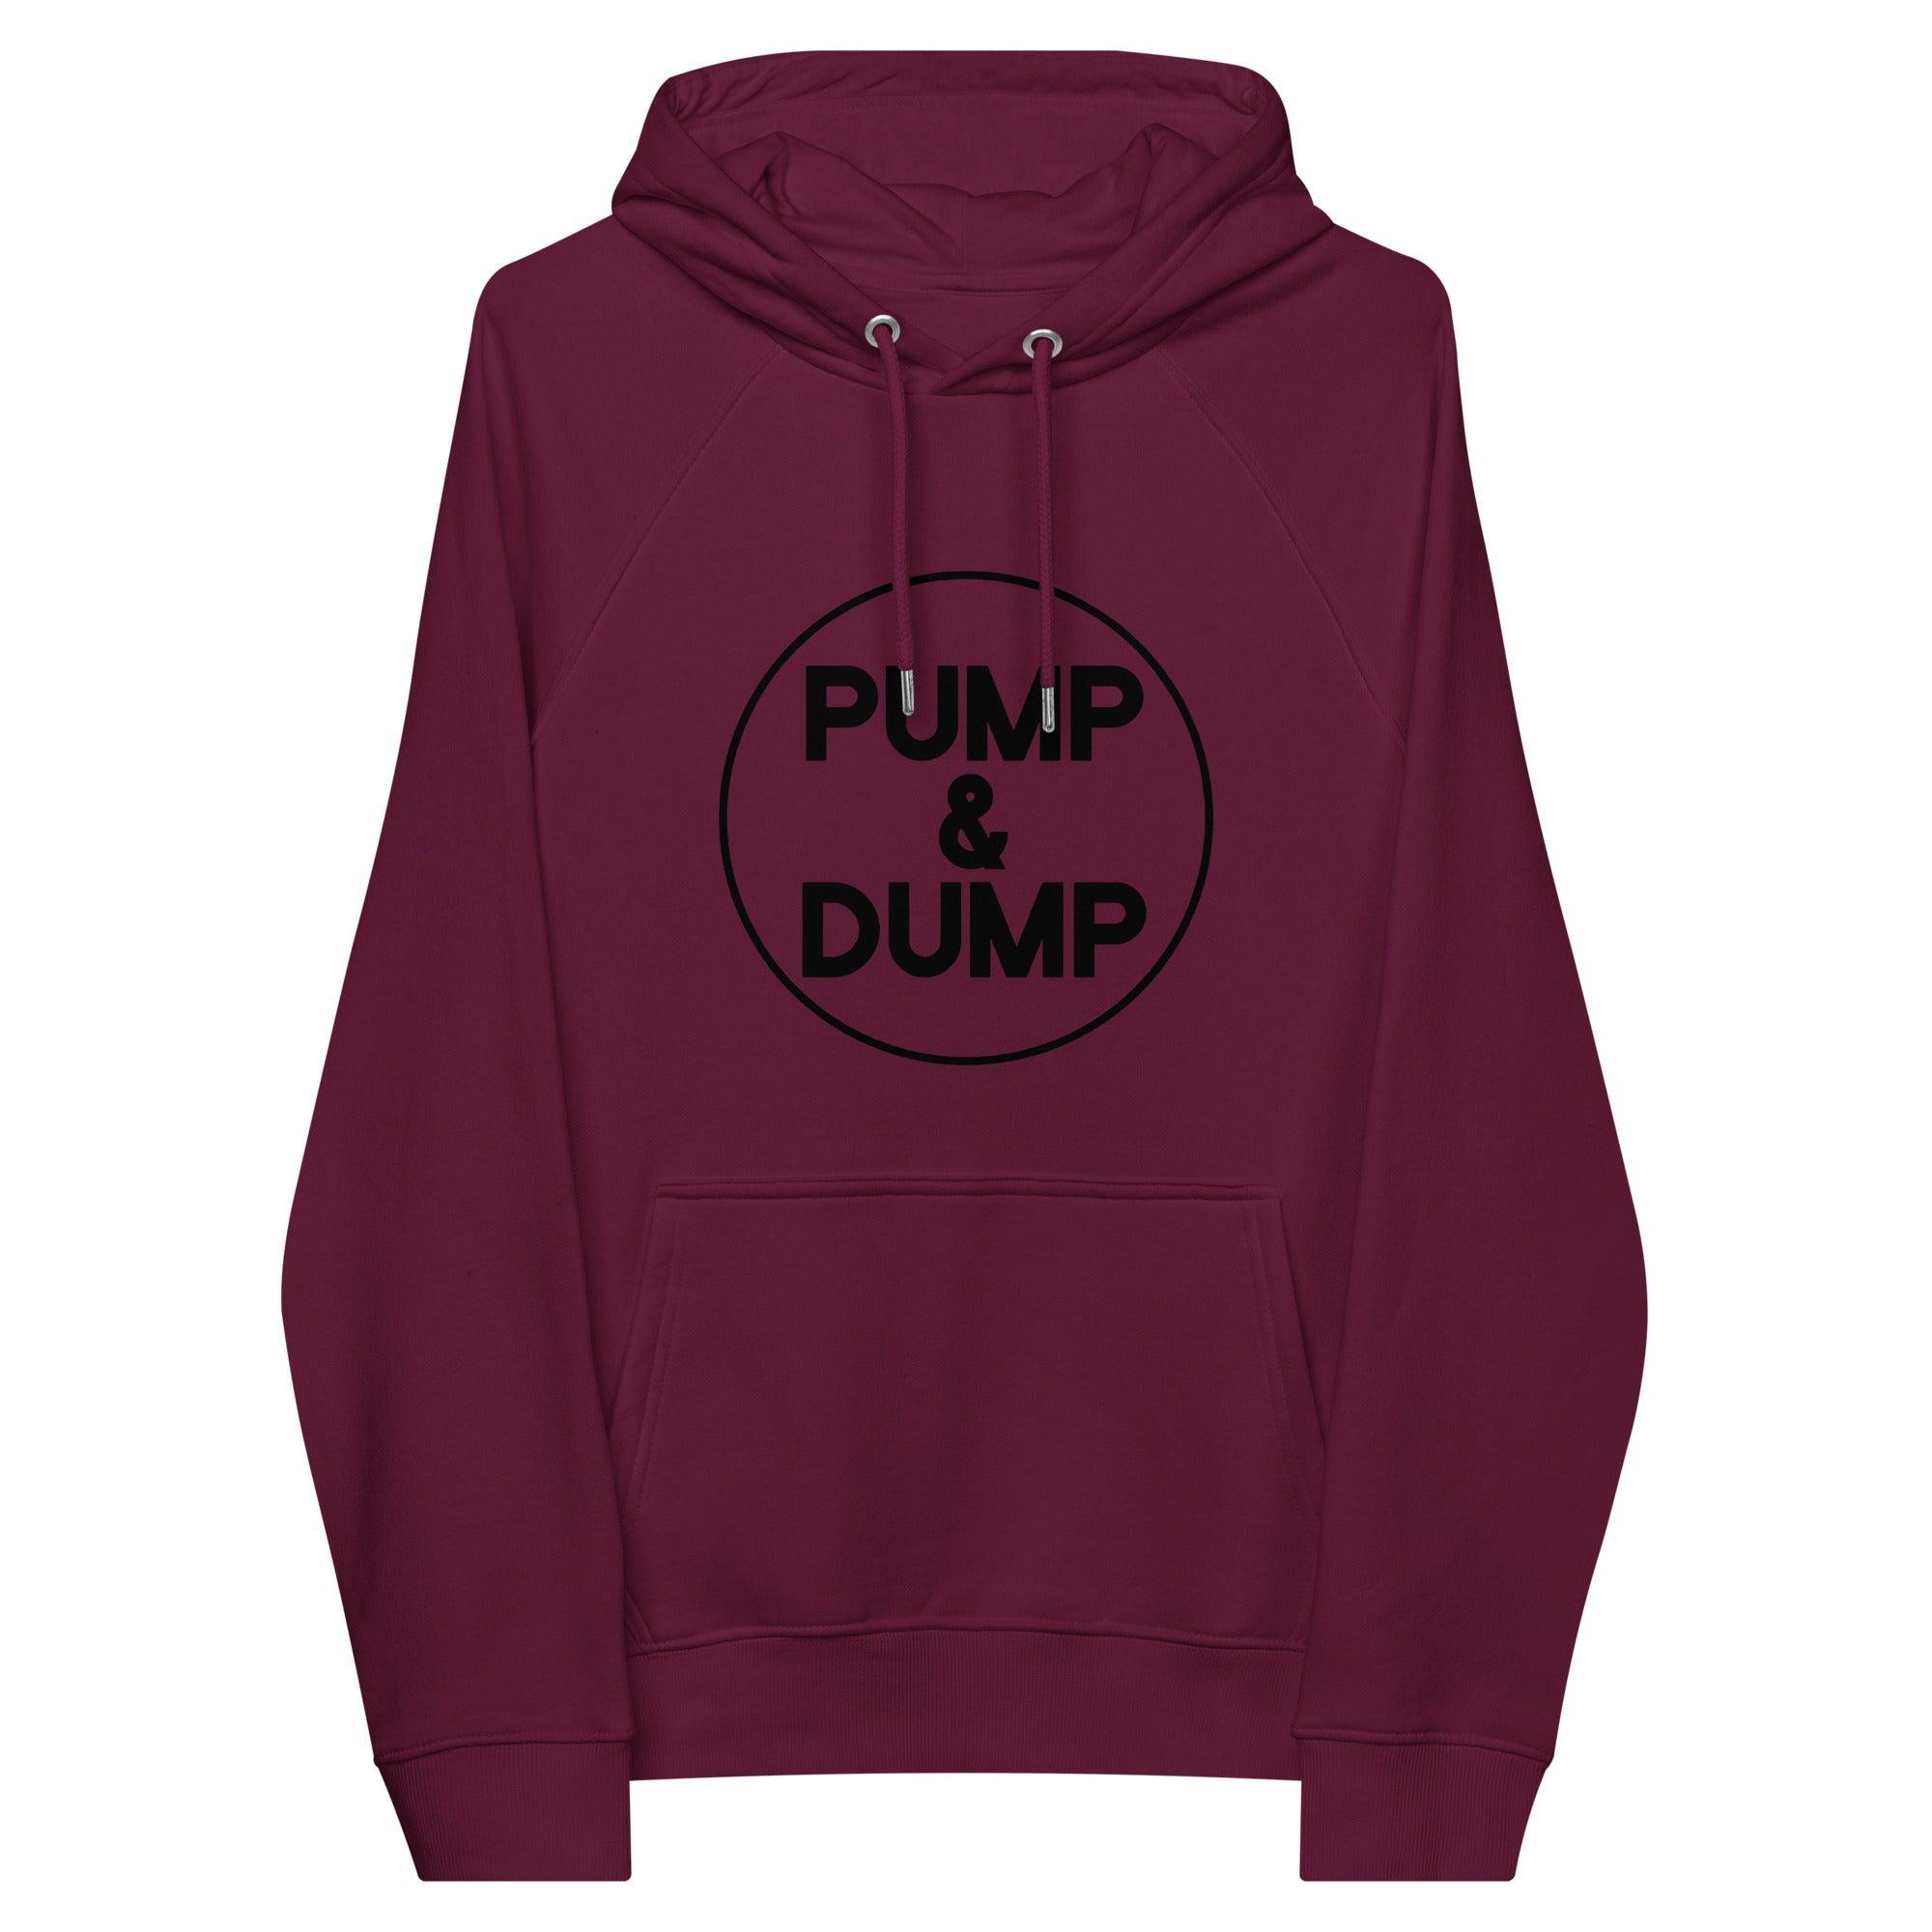 Pump & Dump Pullover Hoodie - InvestmenTees